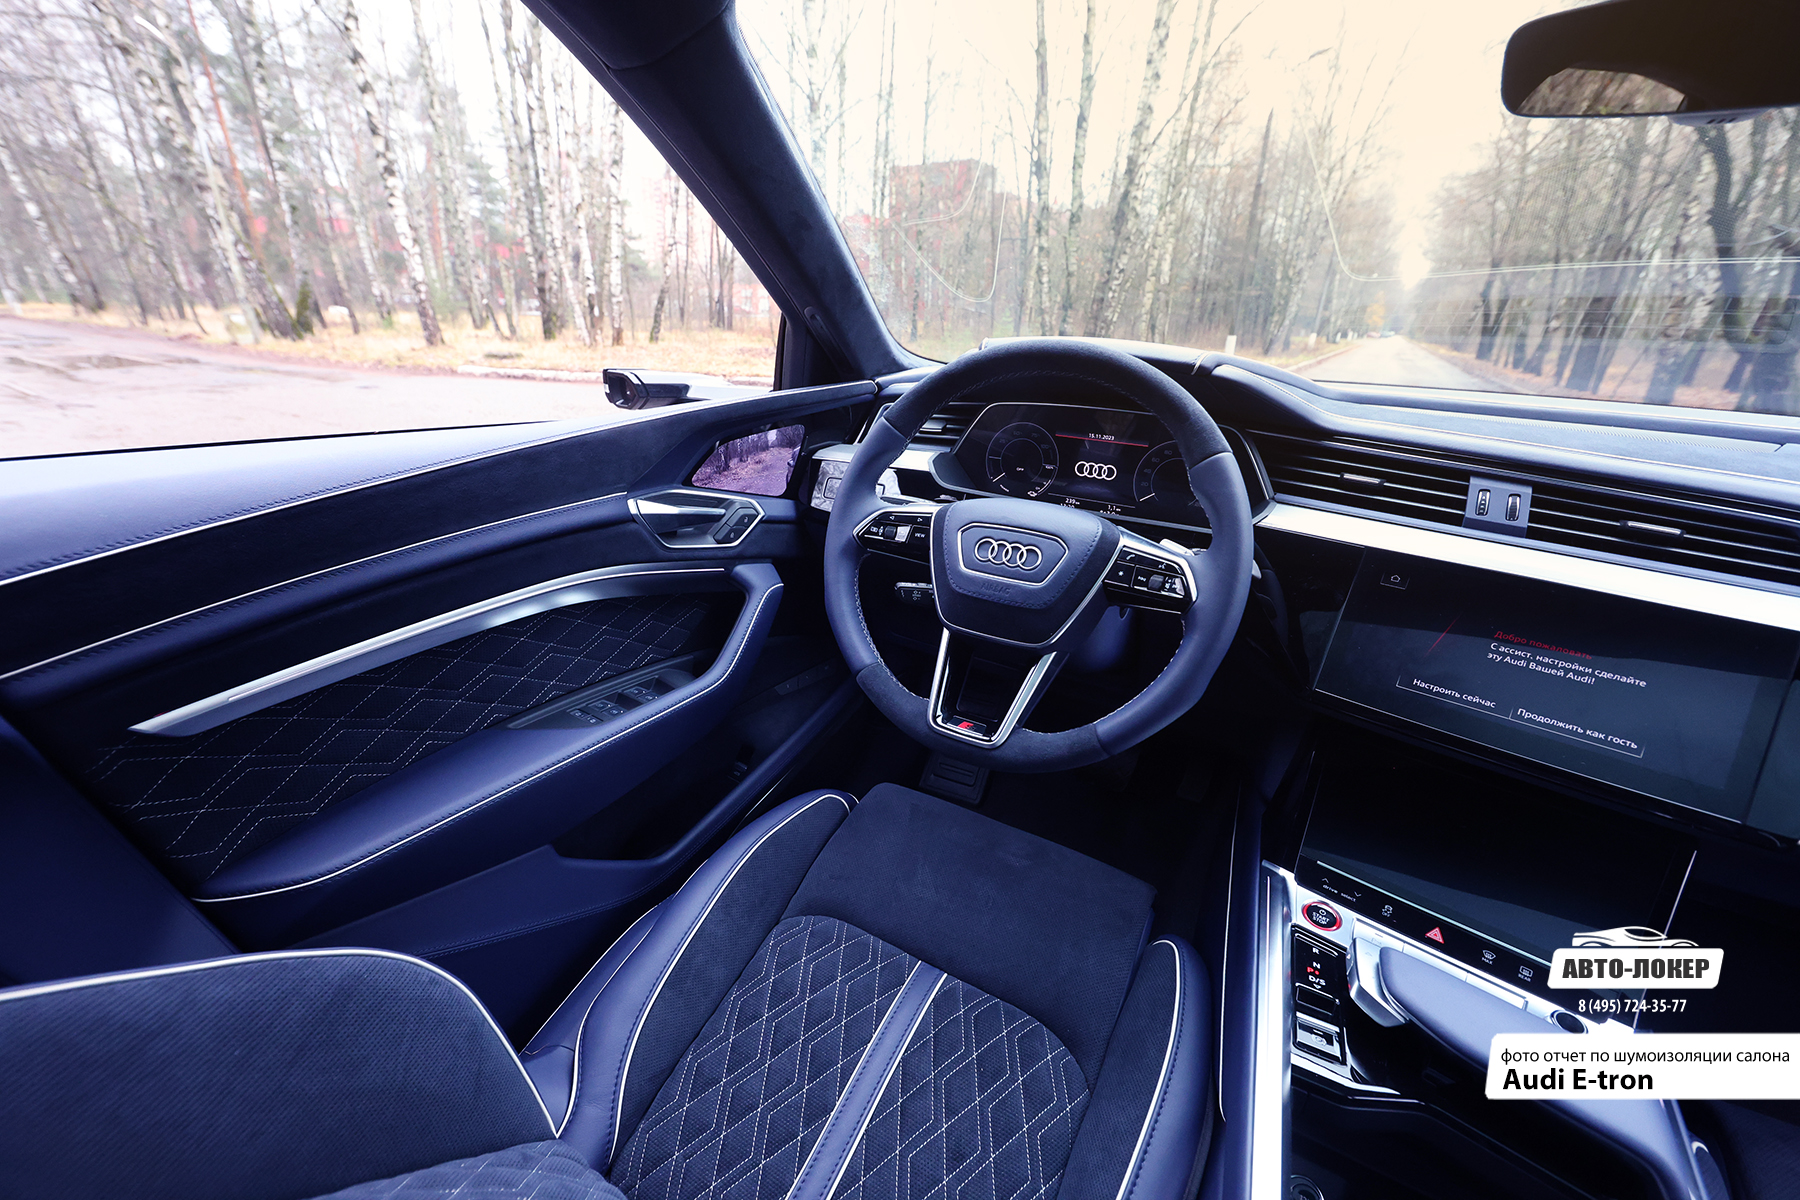 Перетяжка передних сидений и руля салона Audi E-tron в натуральную кожу